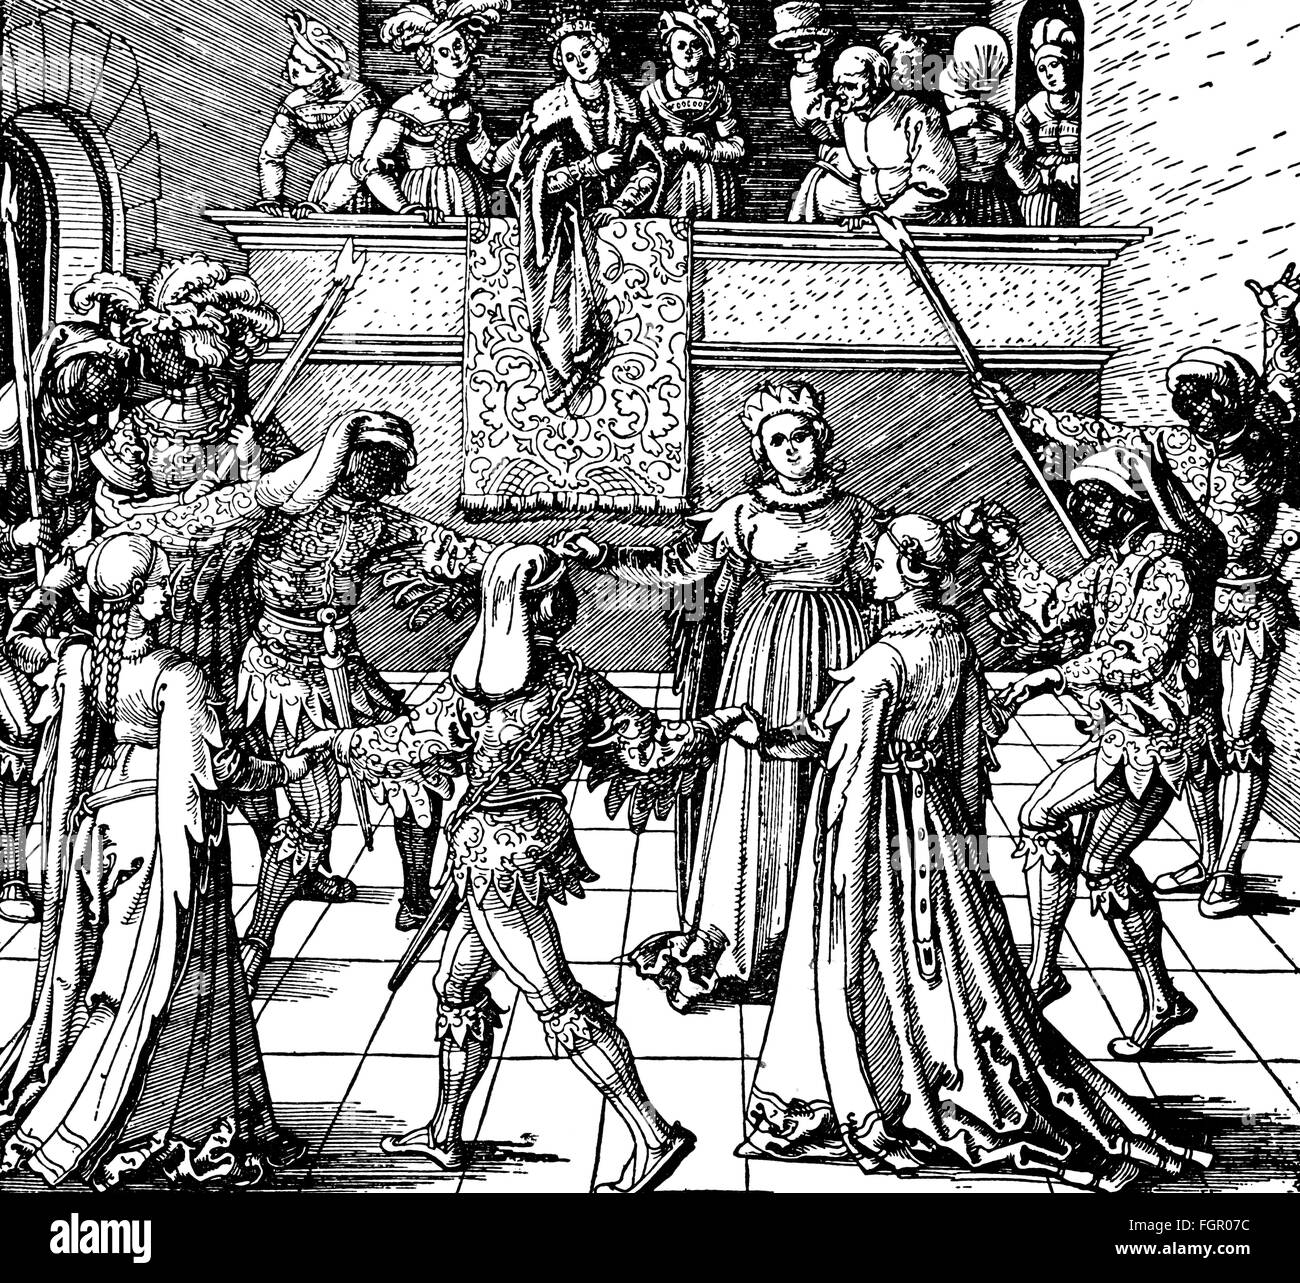 Festival, palla di patrizi, xilografia di Albrecht Dürer, intorno al 1516, l'artista del diritto d'autore non deve essere cancellata Foto Stock